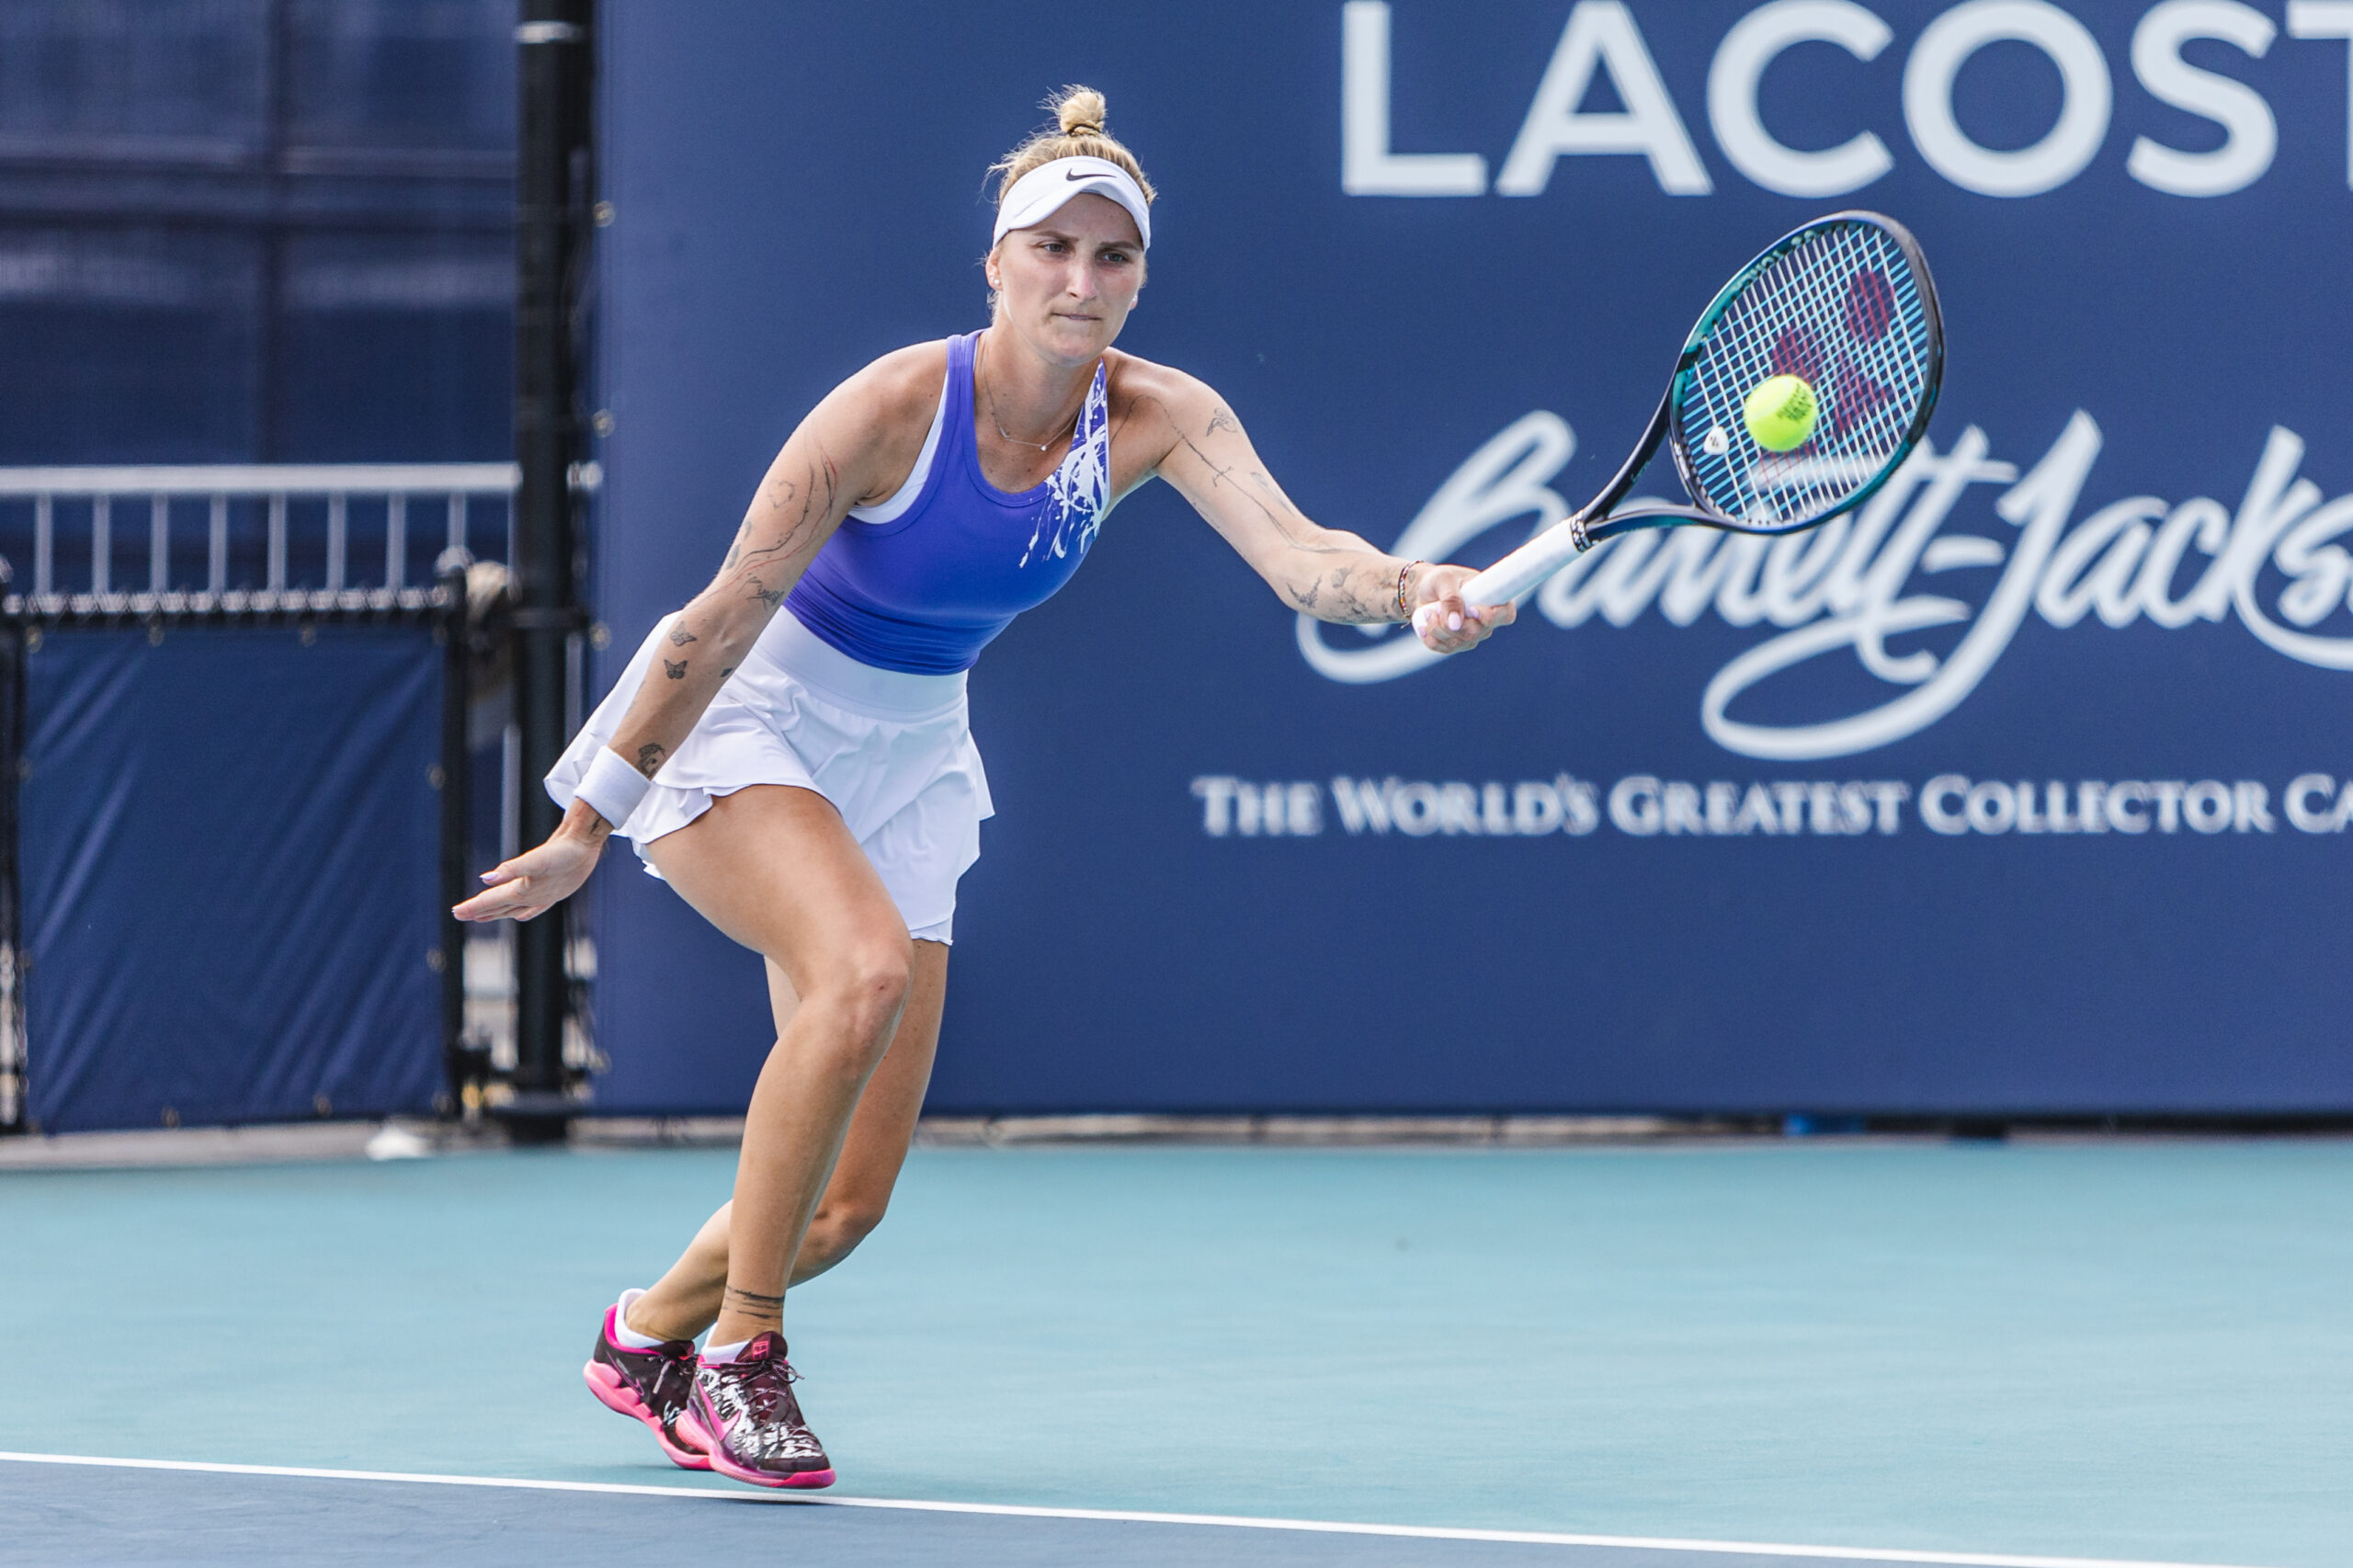 Marketa Vondrousova on March 27, 2023 at the Miami Open